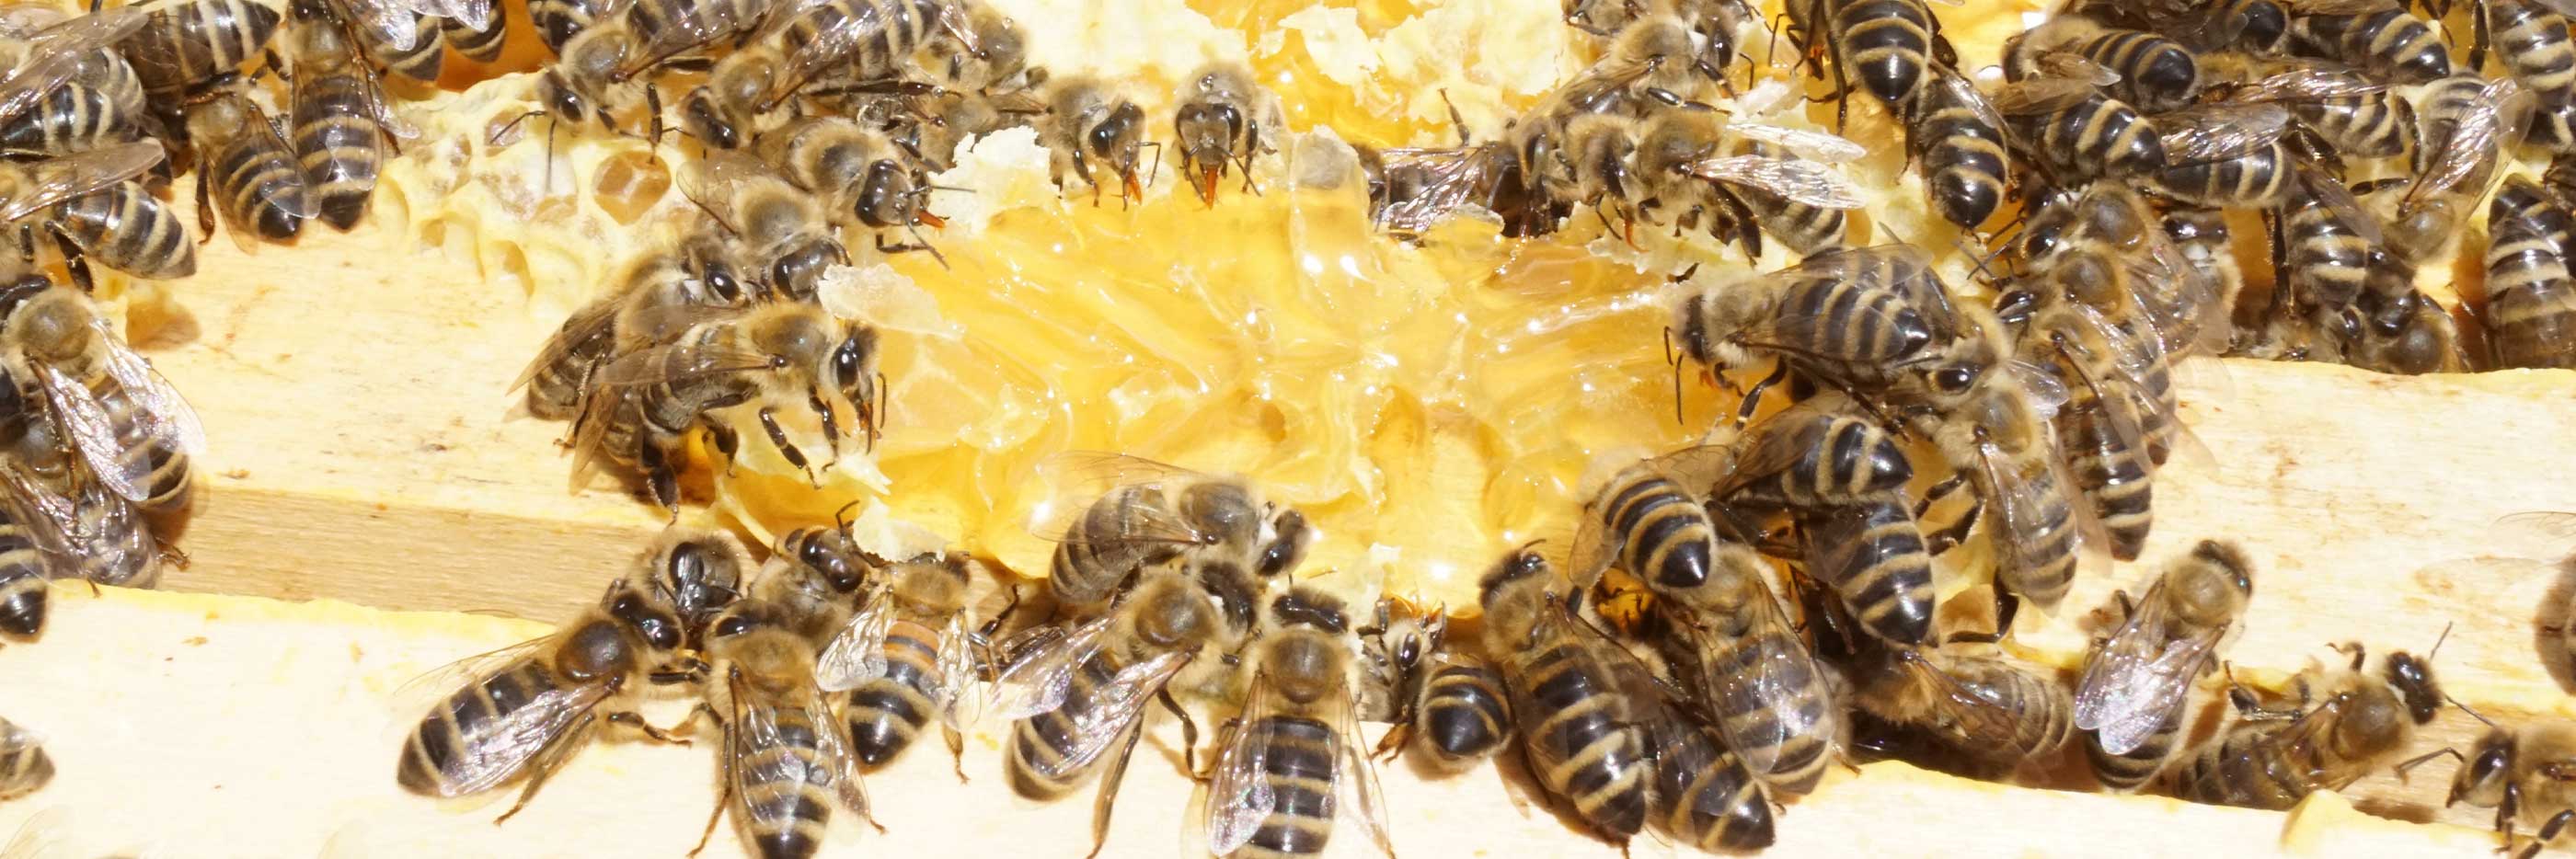 De zwerm bijen verzamelt de honing uit de open raten | mey®